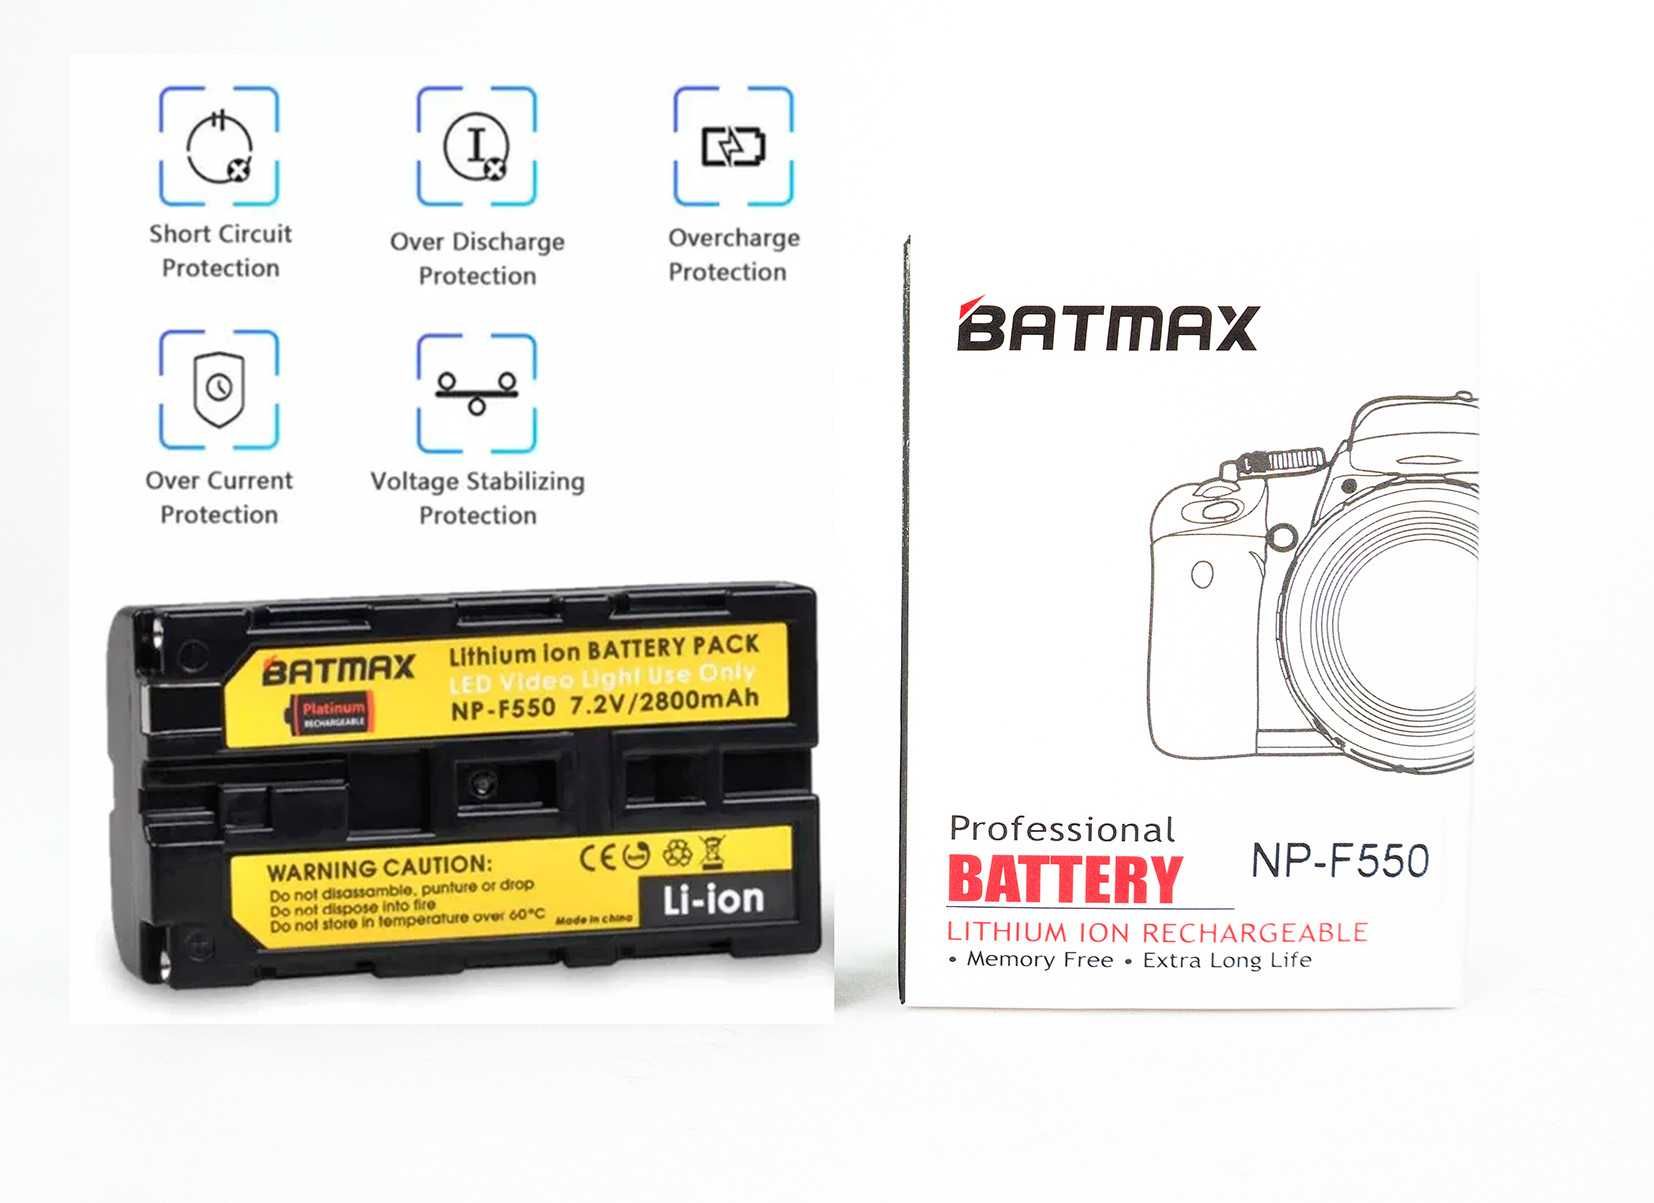 Акумулятор Batmax NP-F550 F570 NP-F750 батарея NP-F960 для відеосвітла